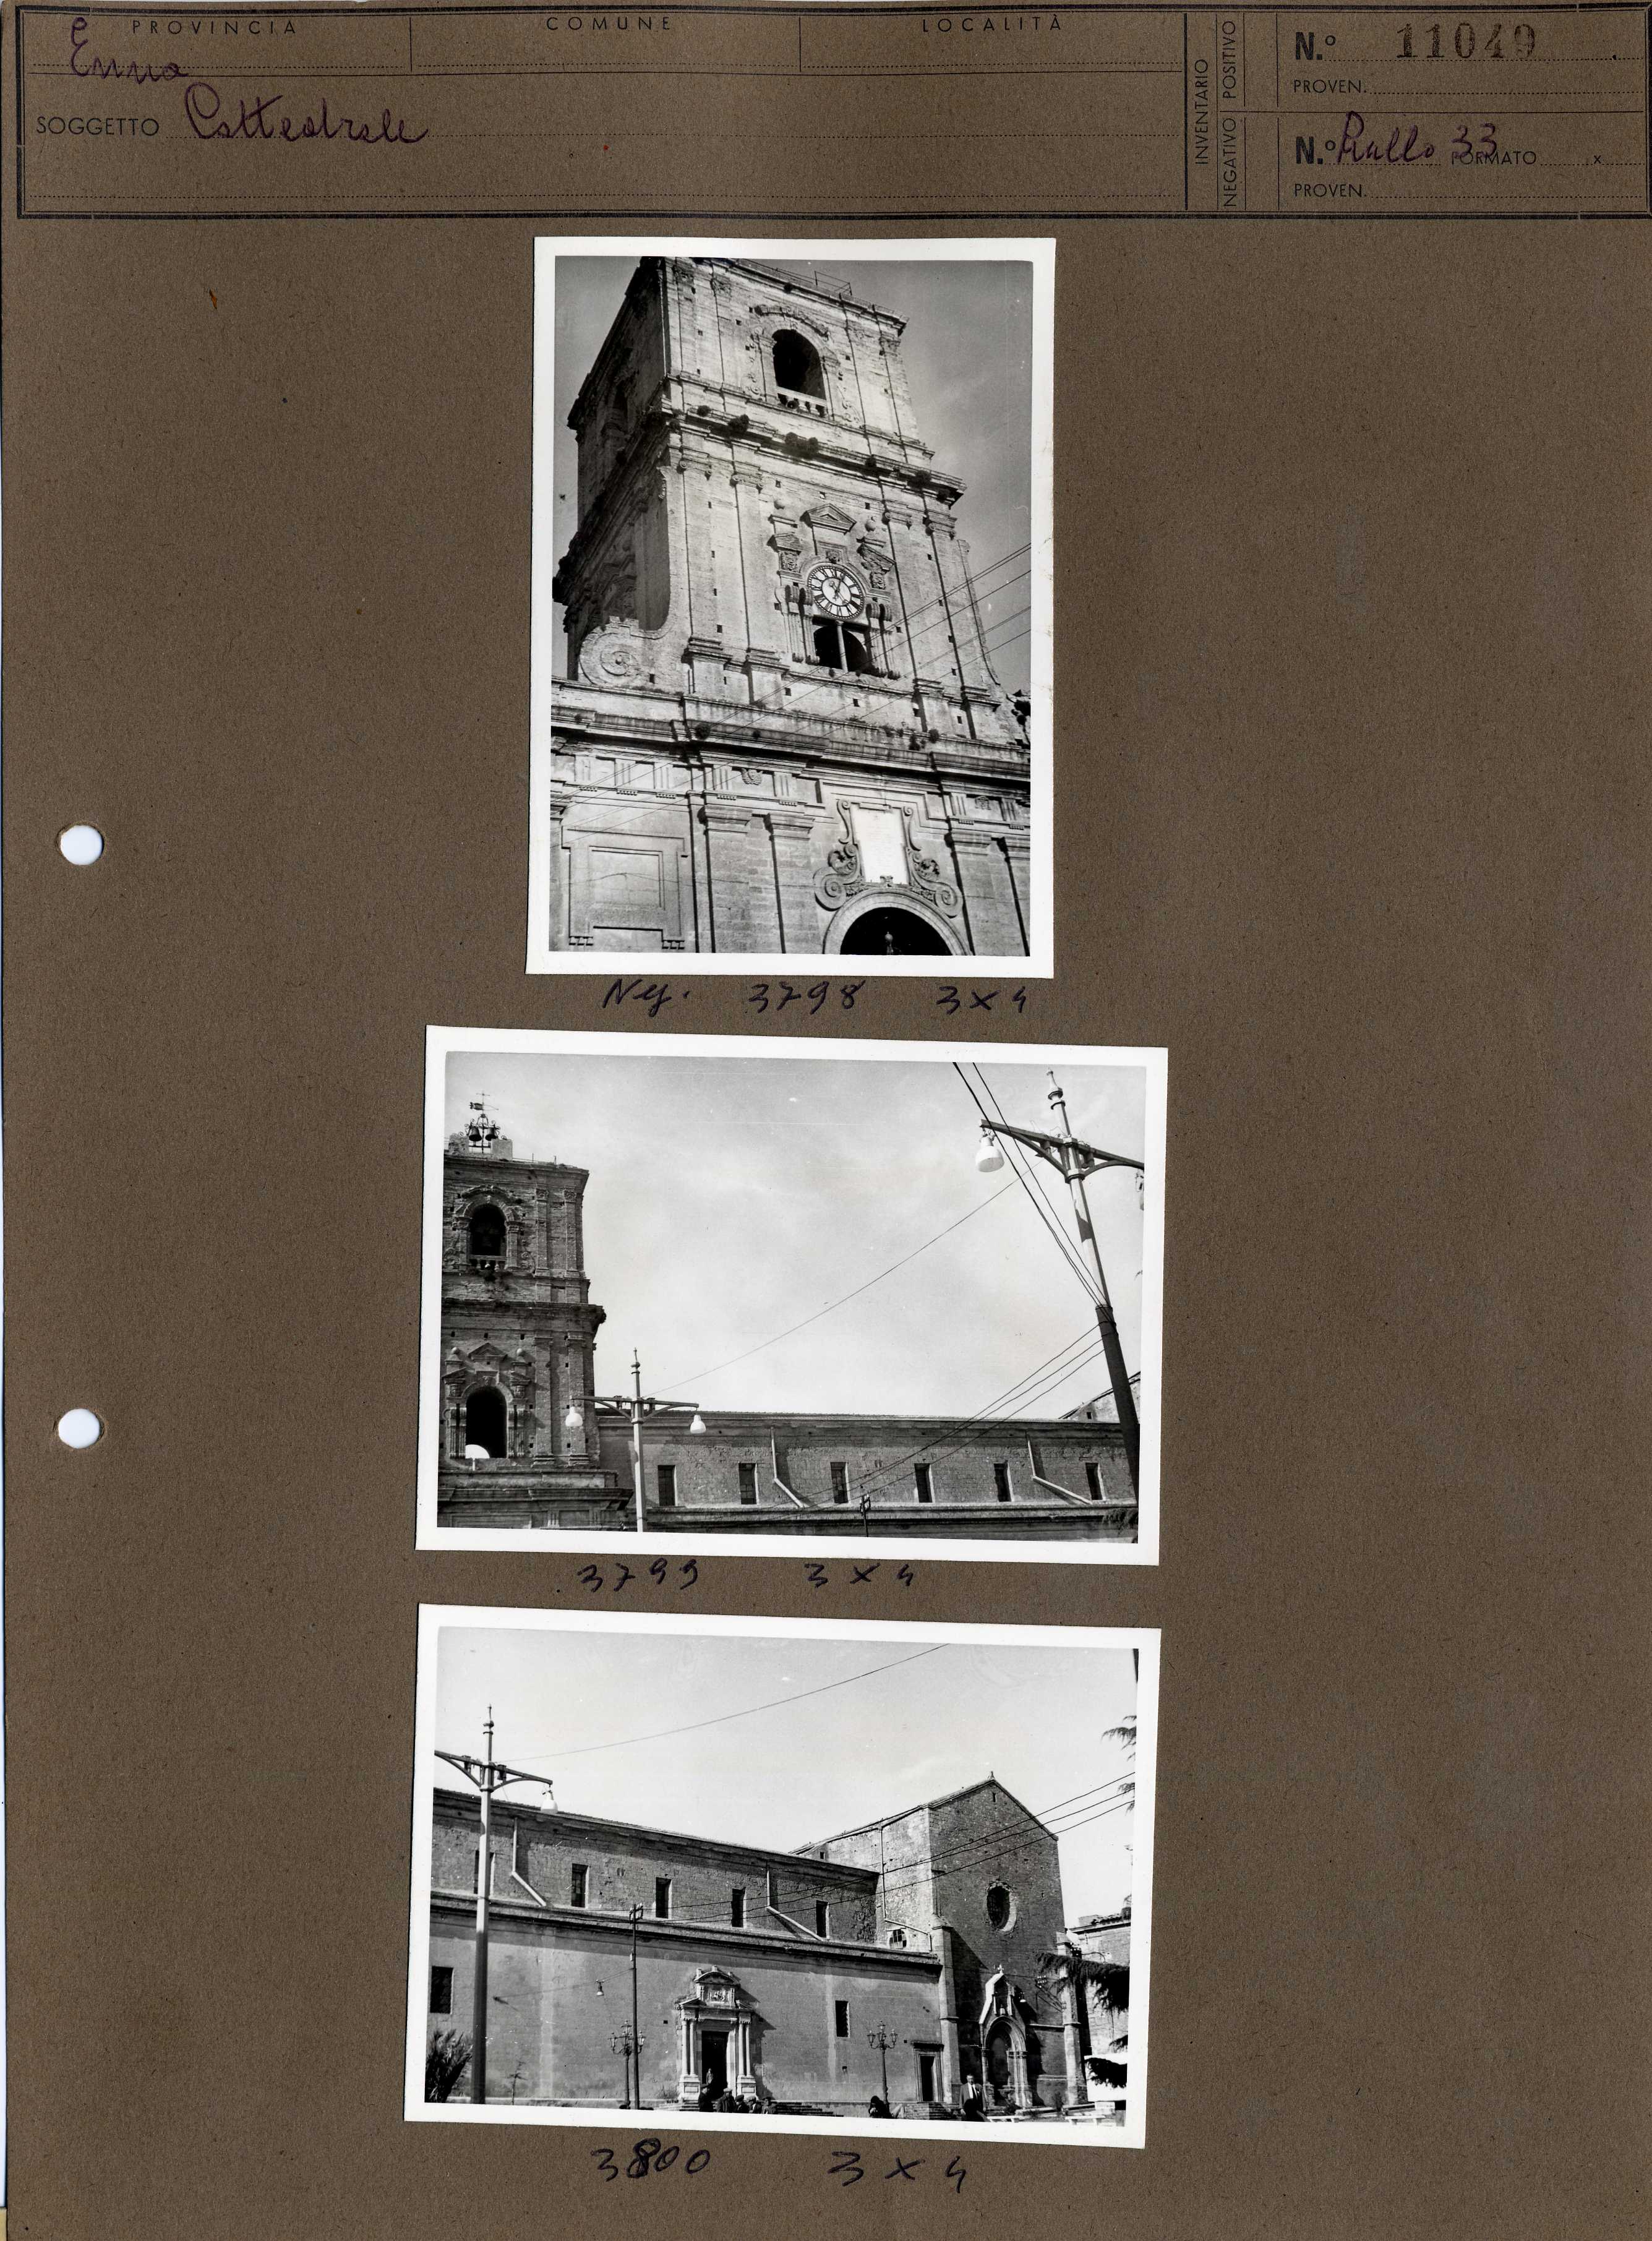 Sicilia - Enna – Architettura religiosa - Duomo (positivo, elemento-parte componente, scheda di supporto) di Anonimo <1951 - 2000> (terzo quarto XX)